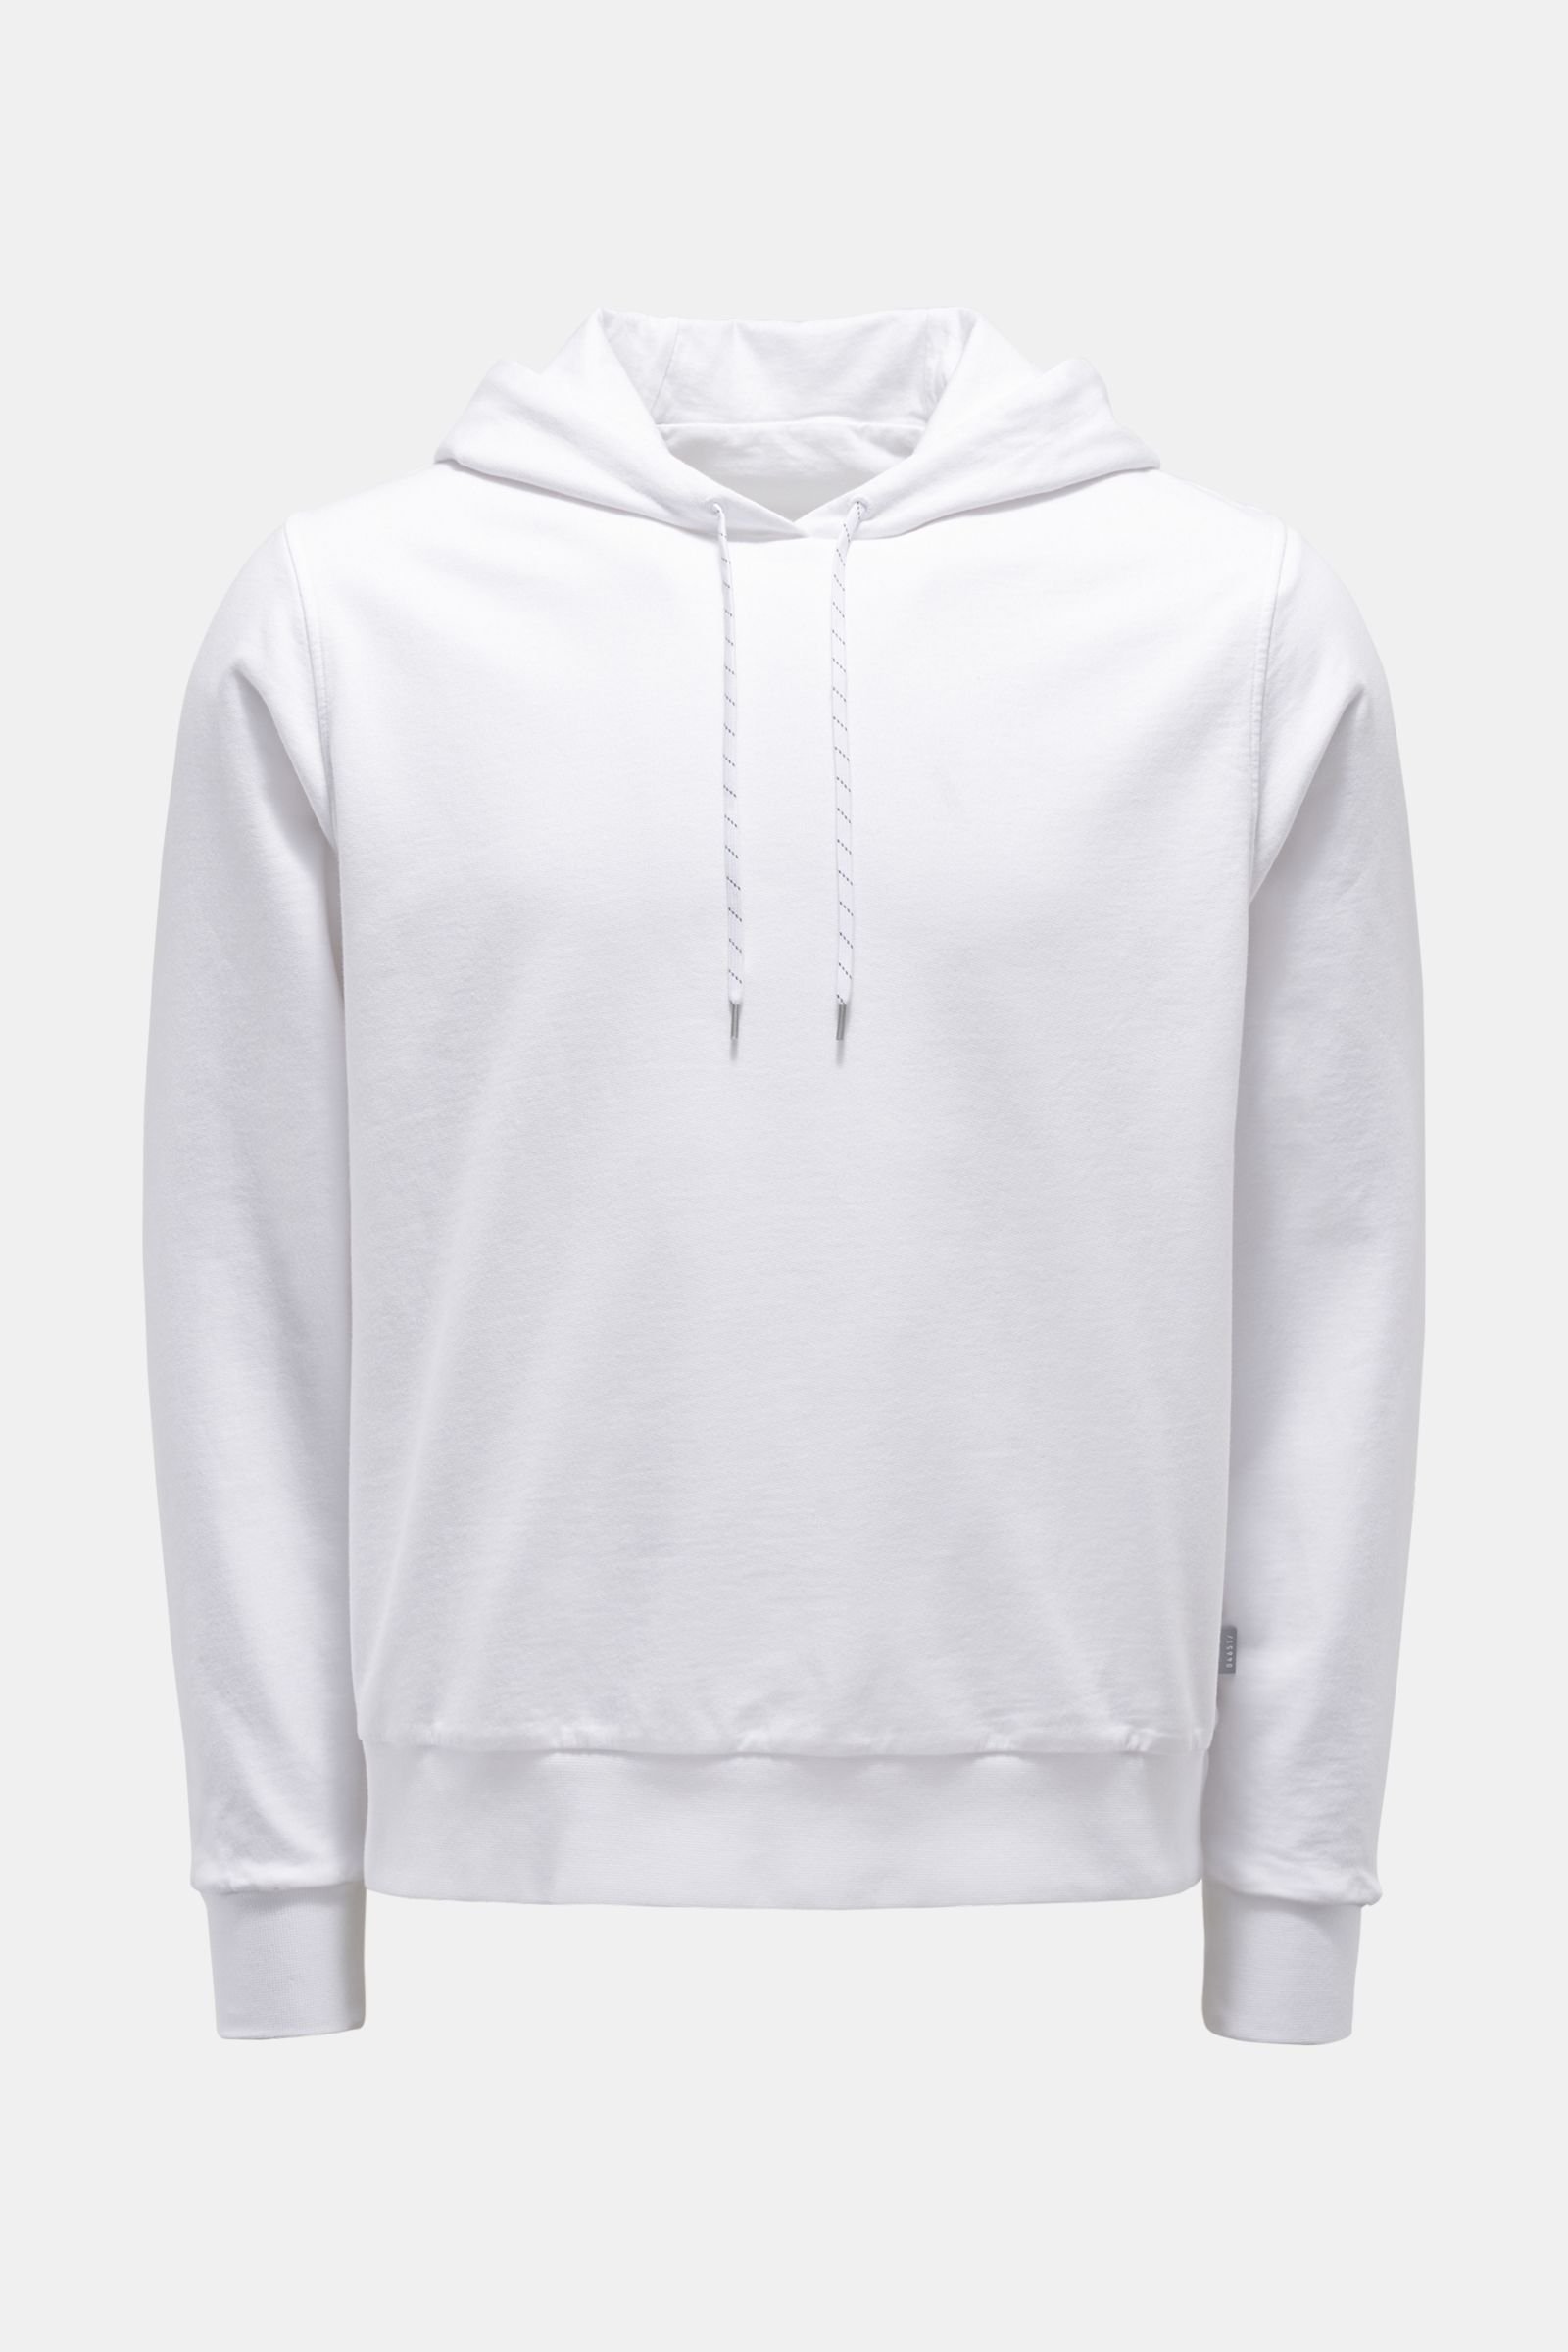 Reversible-hooded jumper white